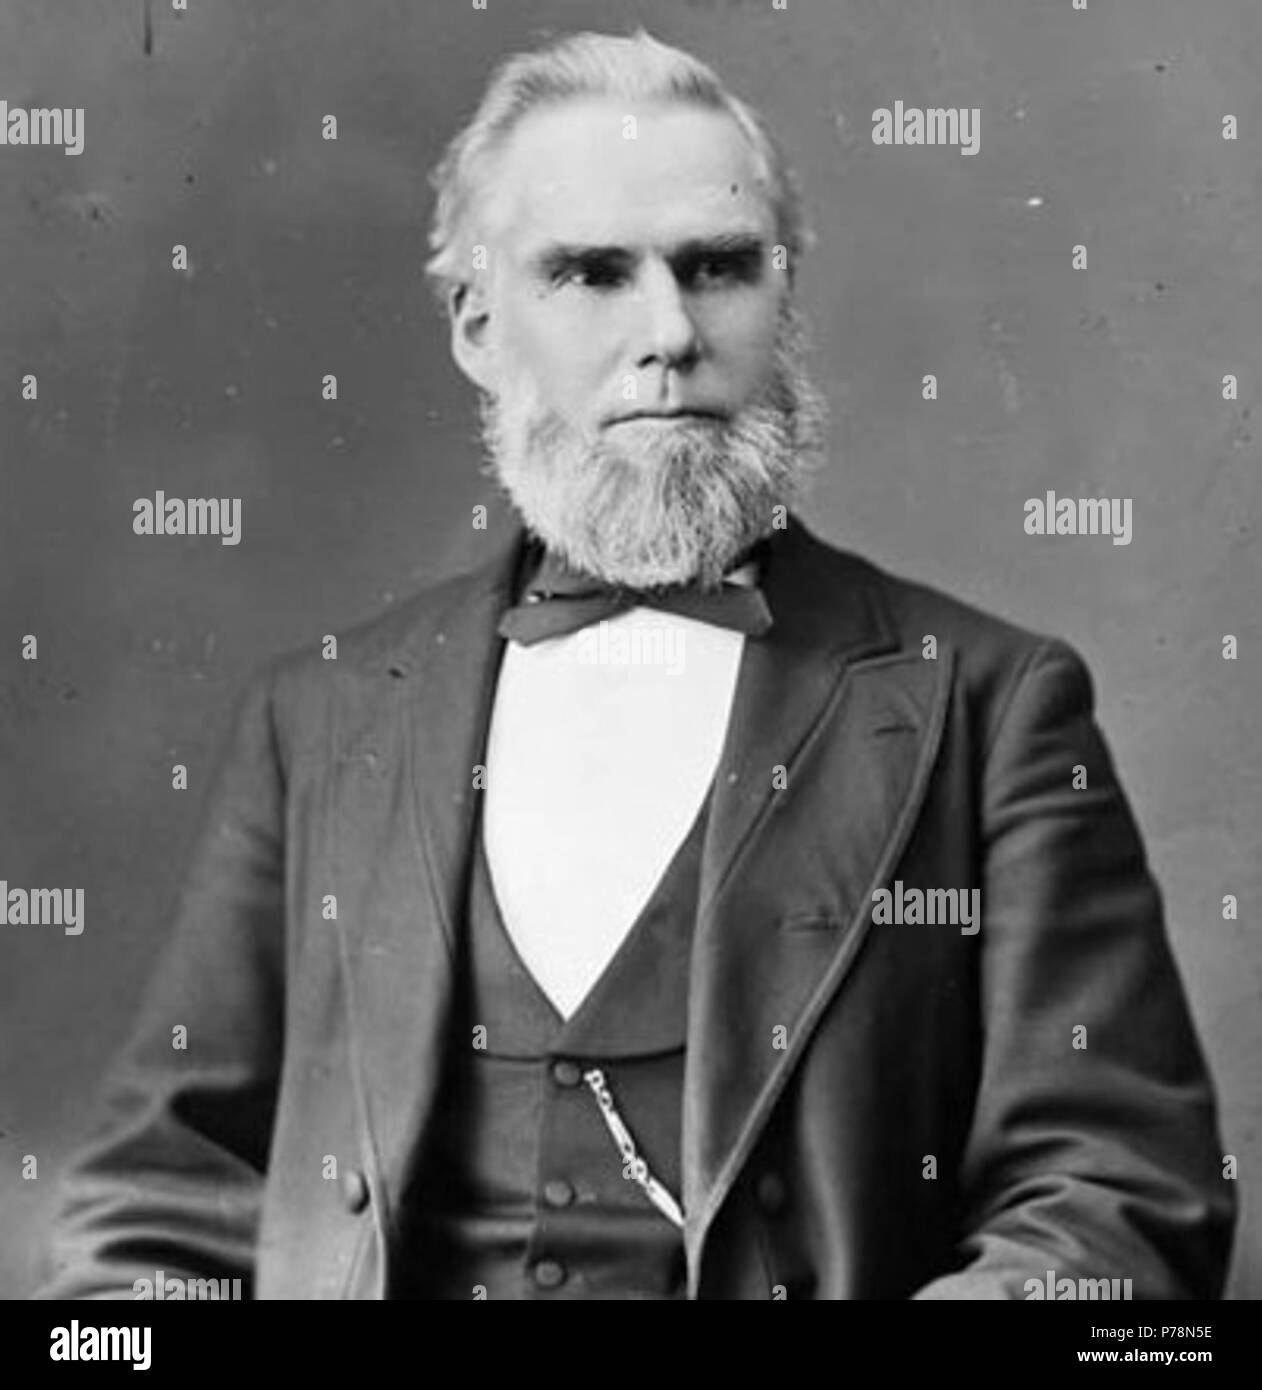 COX Cox,Honorable SS,New York,Ohio,politicians,portrait photographs,men,suits,1870 2 